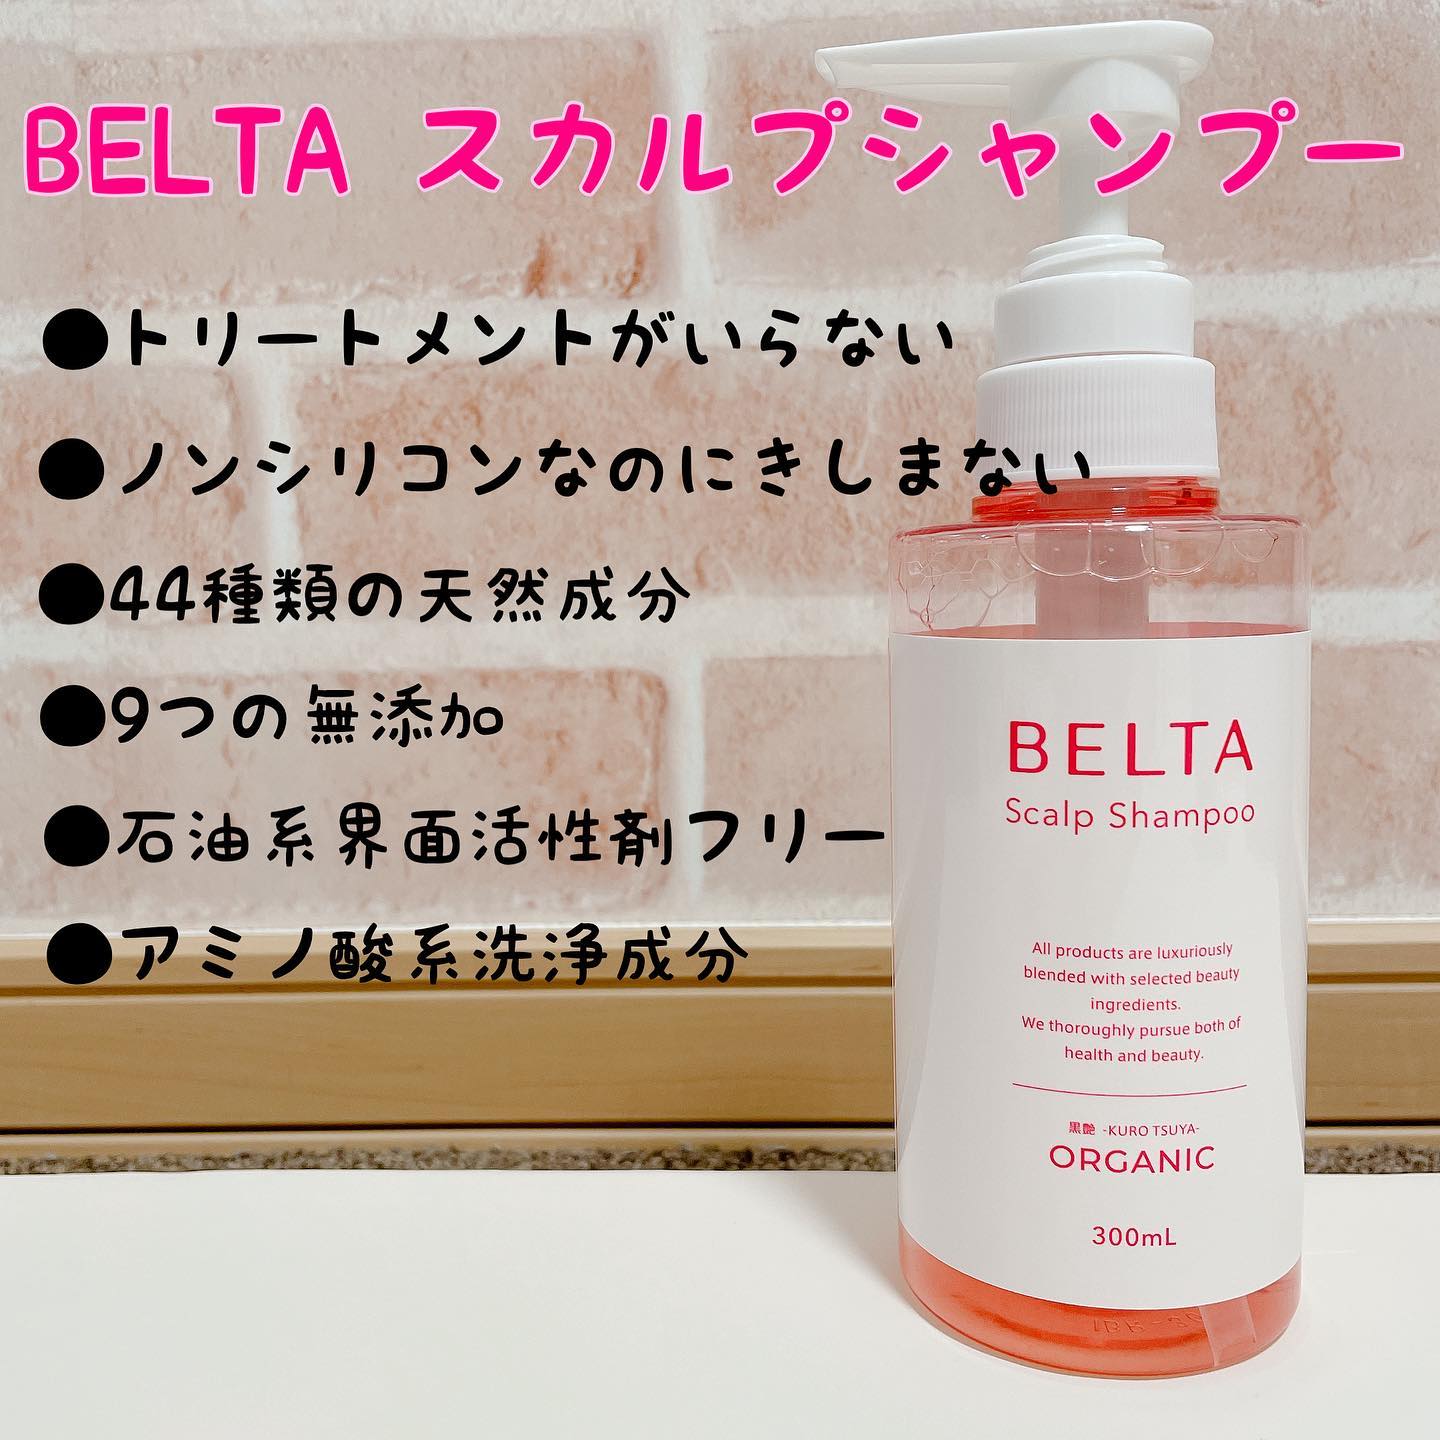 口コミ投稿：BELTA スカルプシャンプー✨妊娠中に葉酸サプリでお世話になっていたベルタさんのオー…